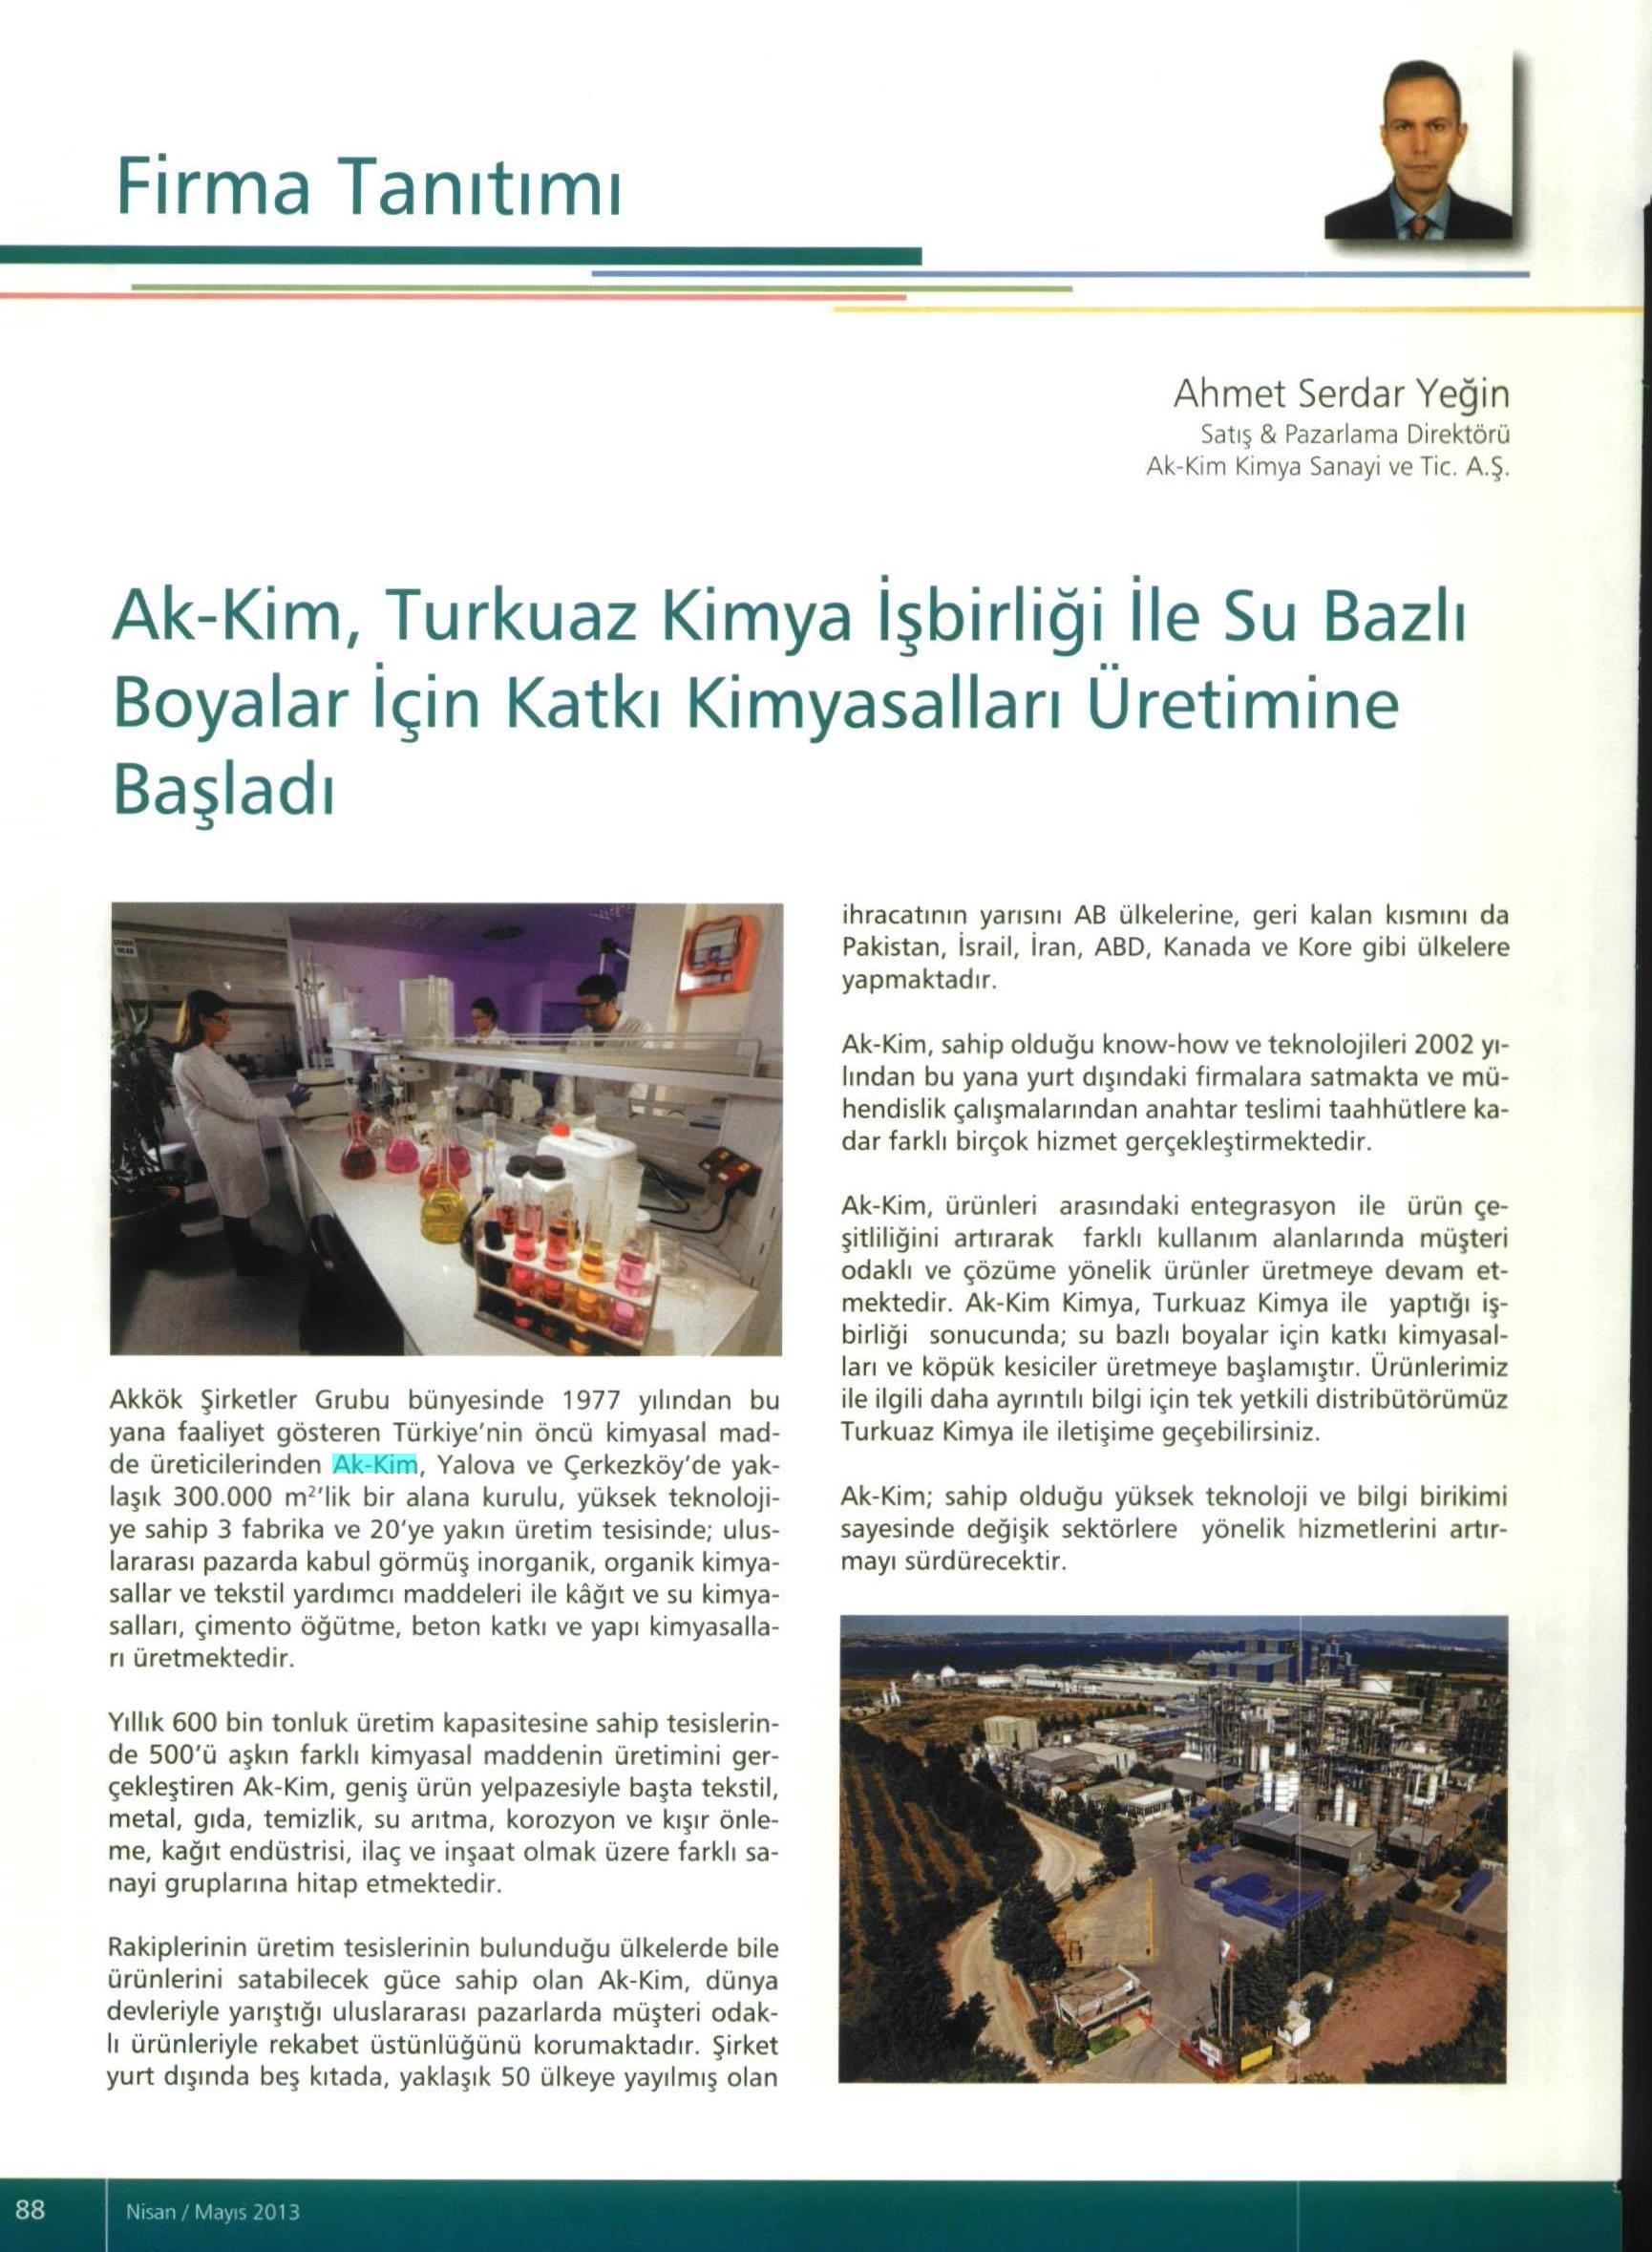 Akkim- Turkuaz Kimya İşbirliği / Boyatürk / Nisan-Mayıs 2013